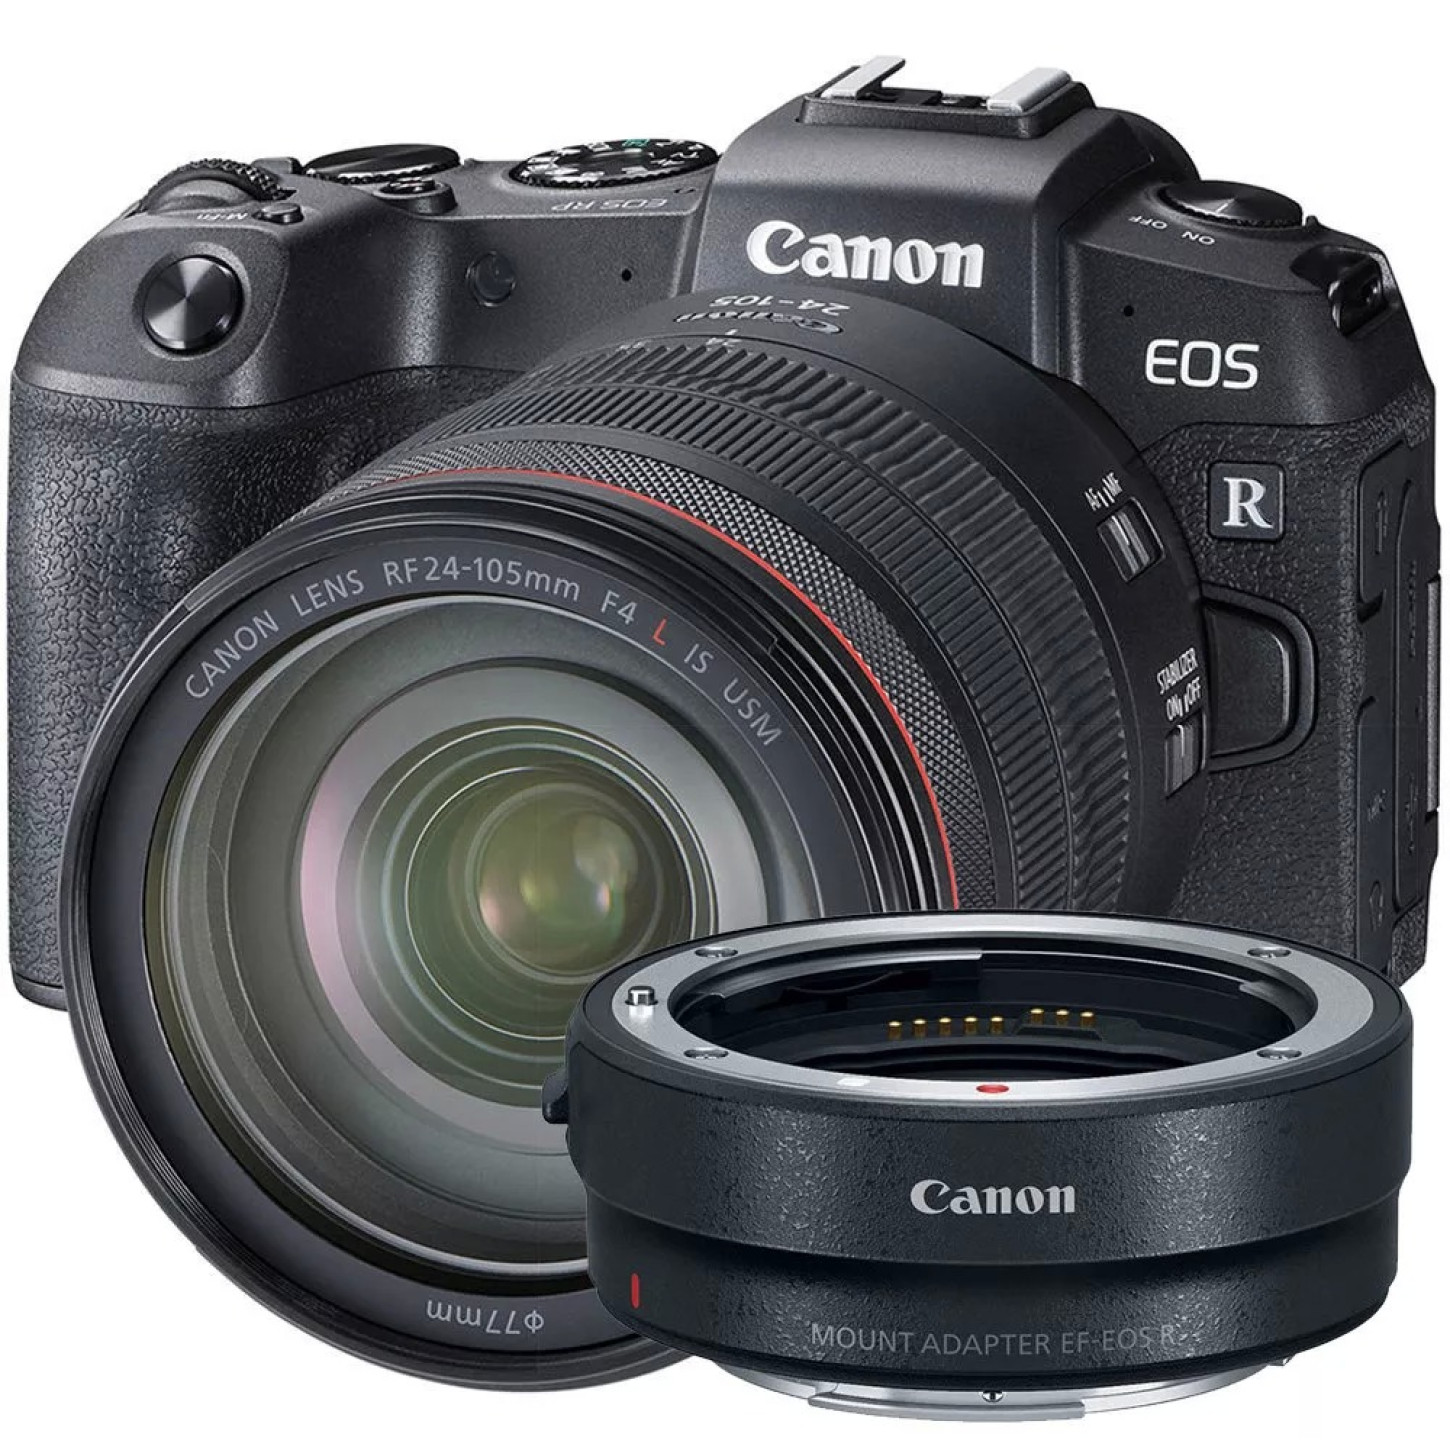 Câmera Canon Eos Rp: Ficha Técnica, Onde Comprar, Preço E Principais Informações